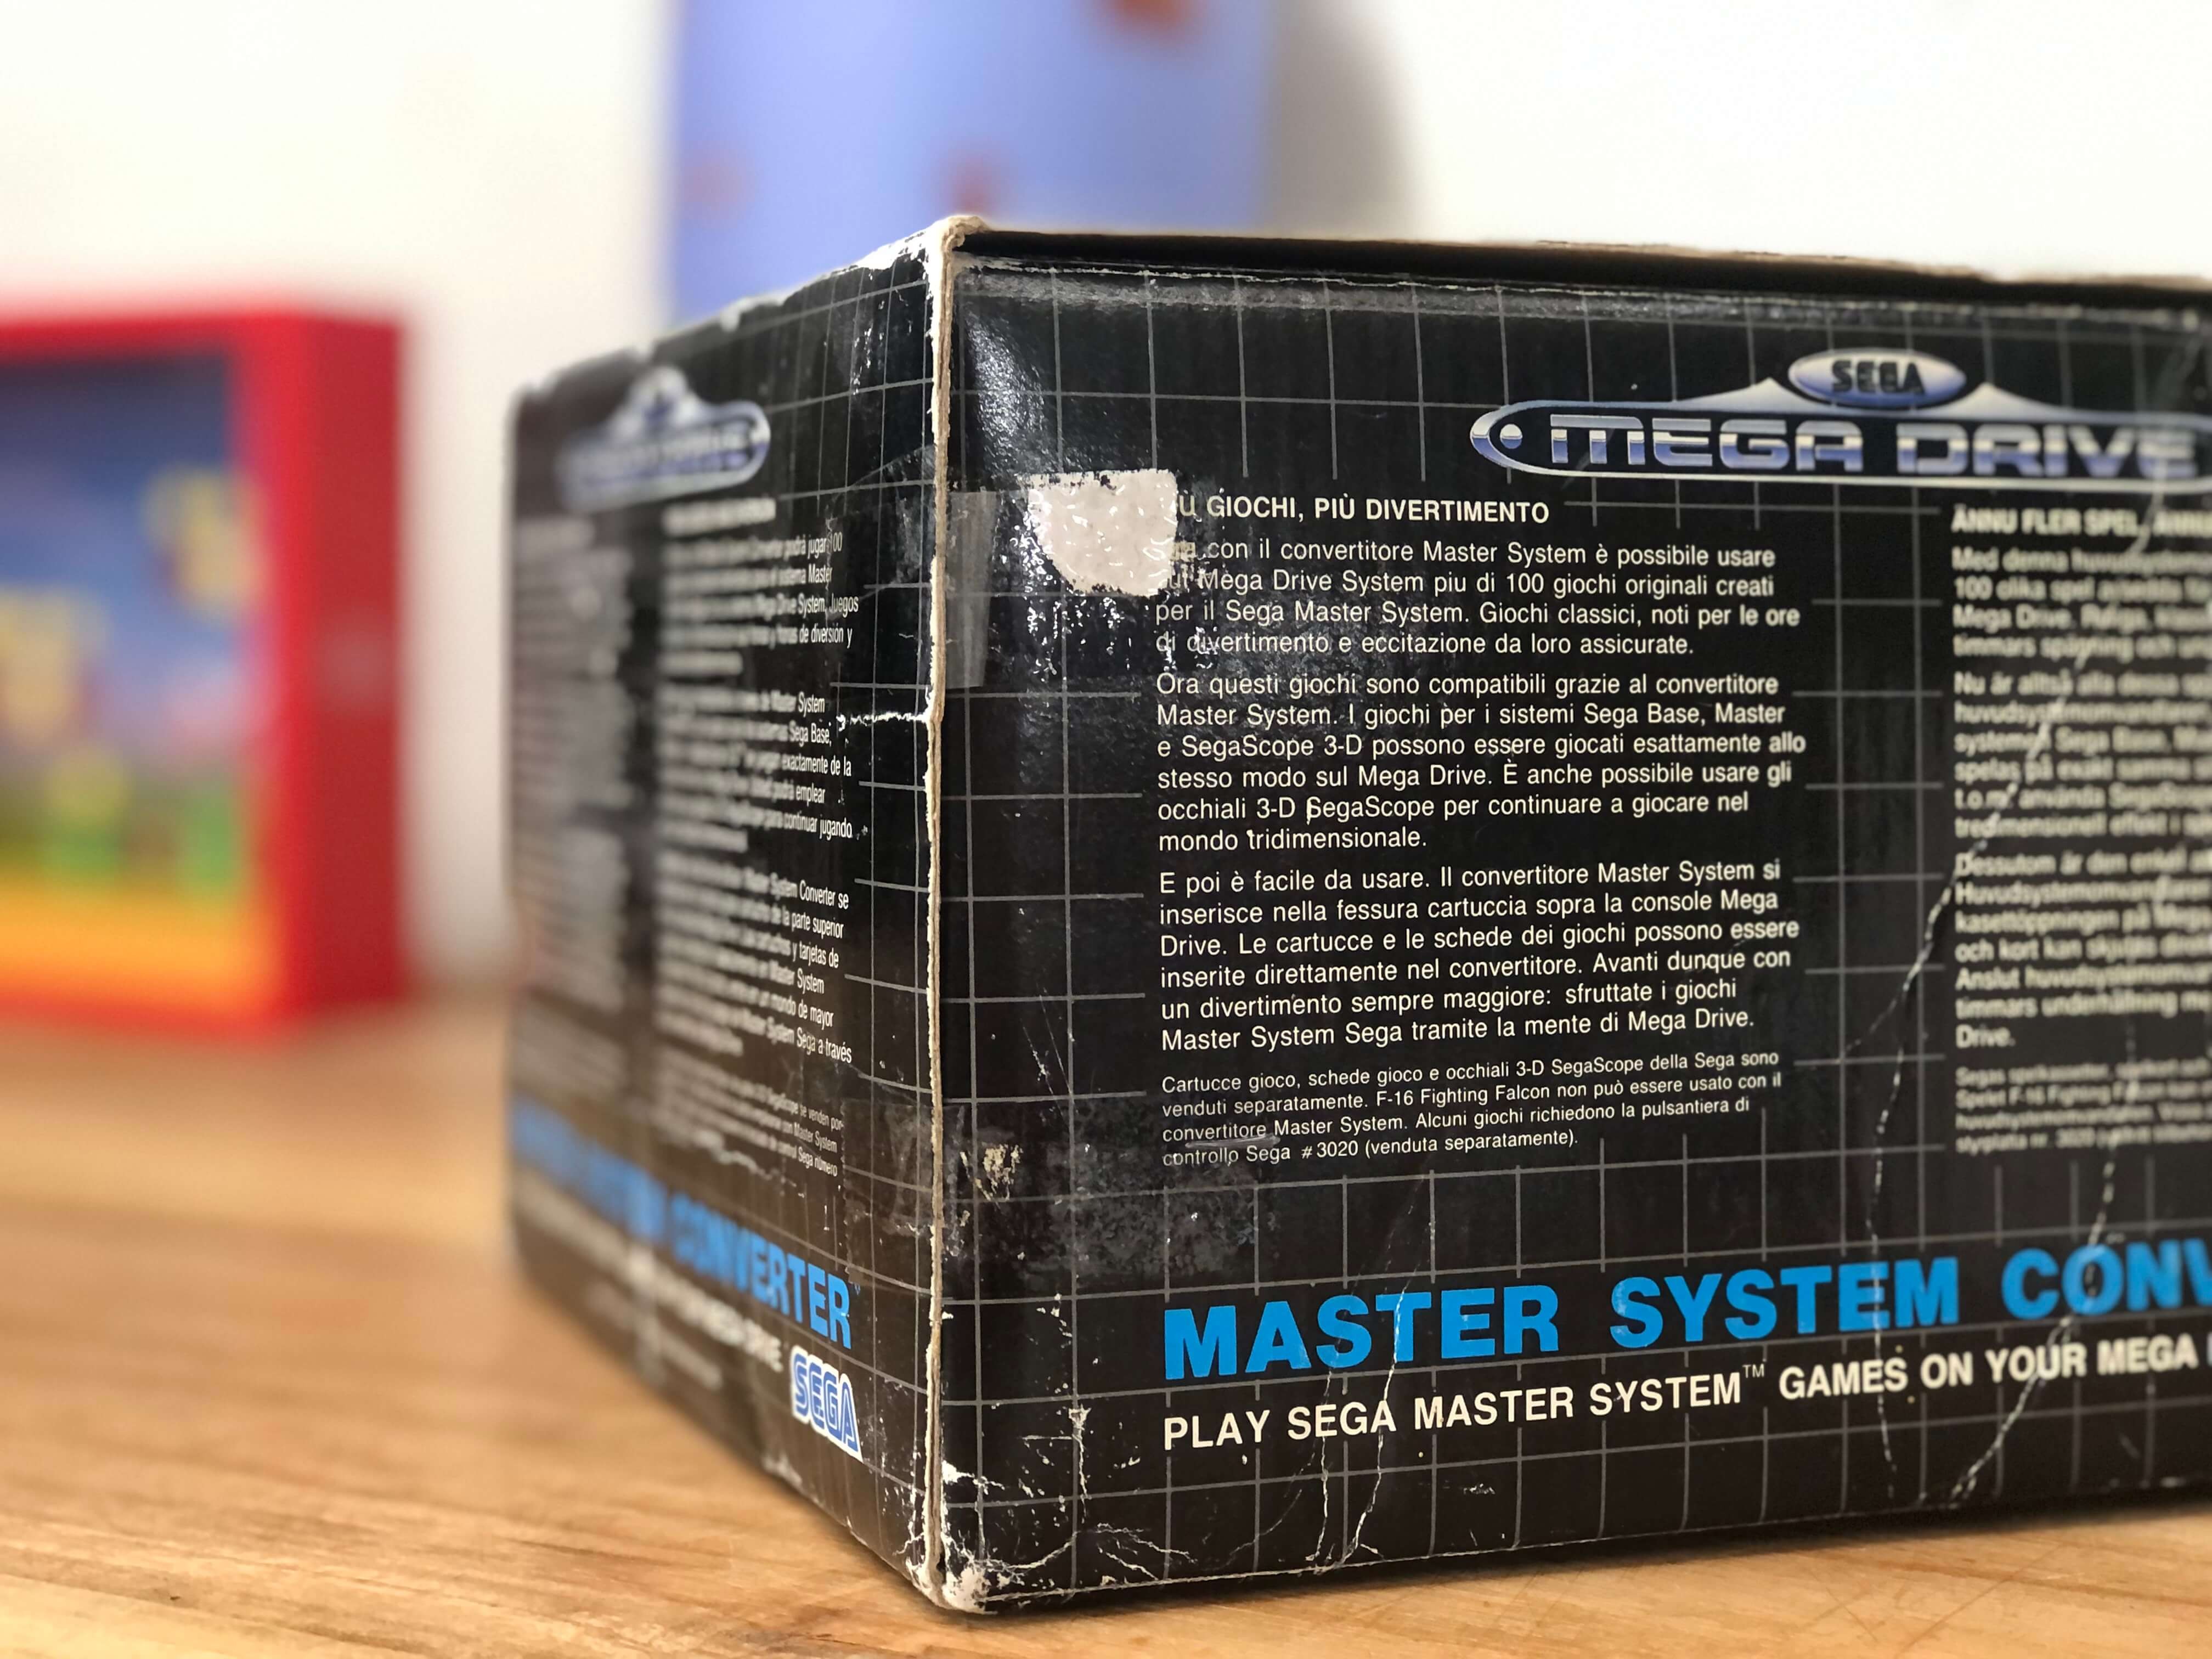 Sega Mega Drive Master System Converter [Complete] - Sega Mega Drive Hardware - 3